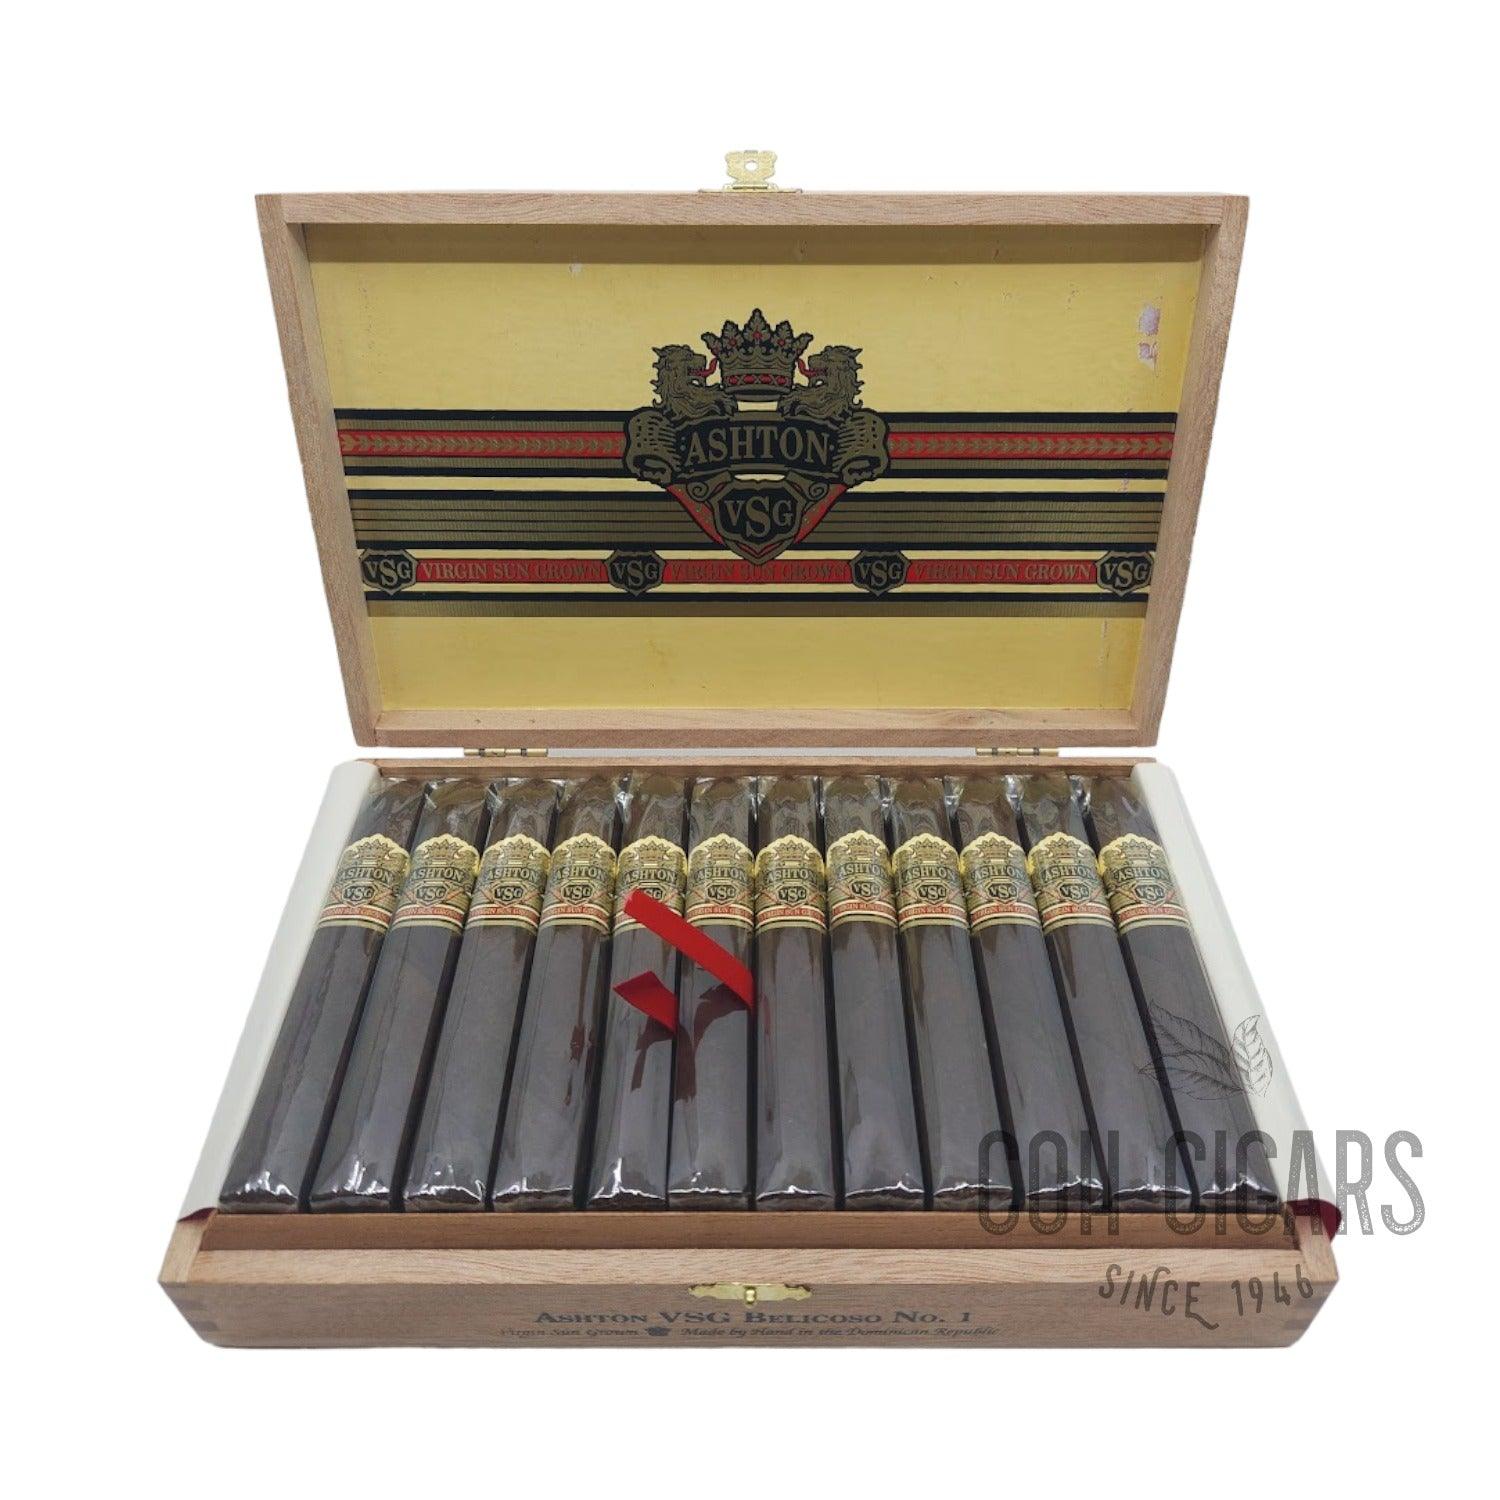 Ashton Cigar | Virgin Sun Grown Belicoso No.1 | Box 24 - hk.cohcigars